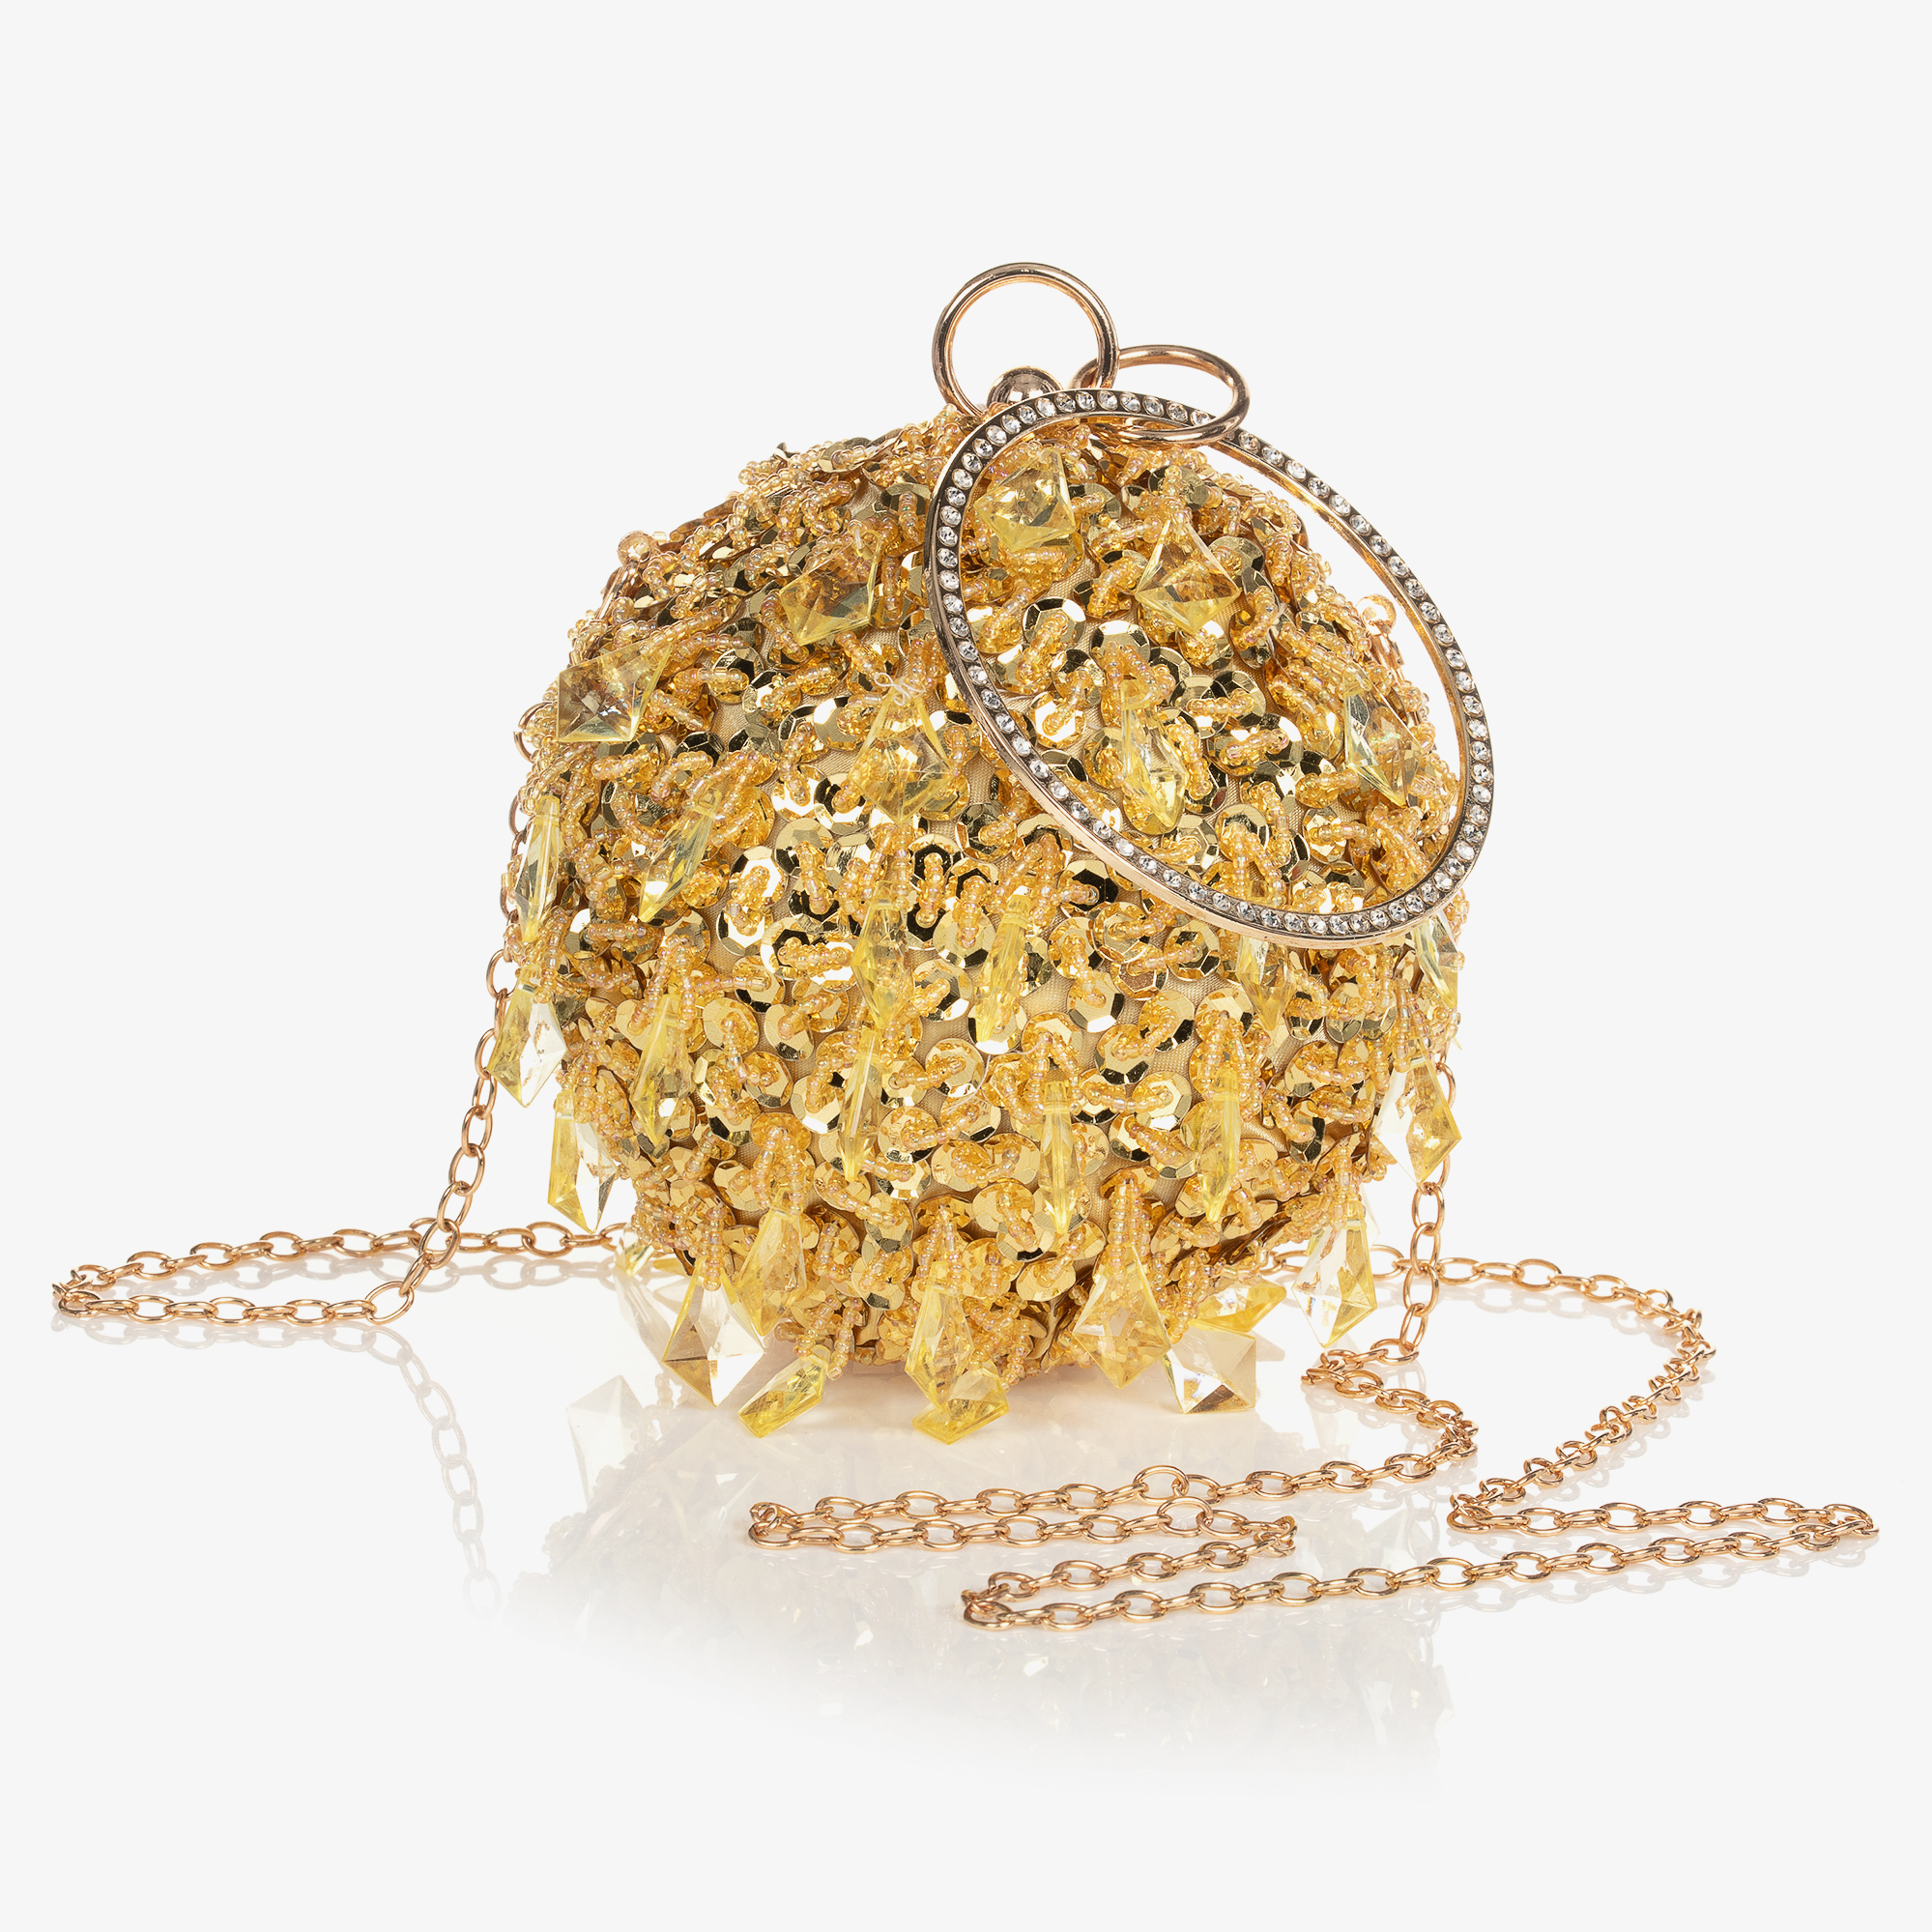 Junona - Girls Gold Round Beaded Bag (14cm)